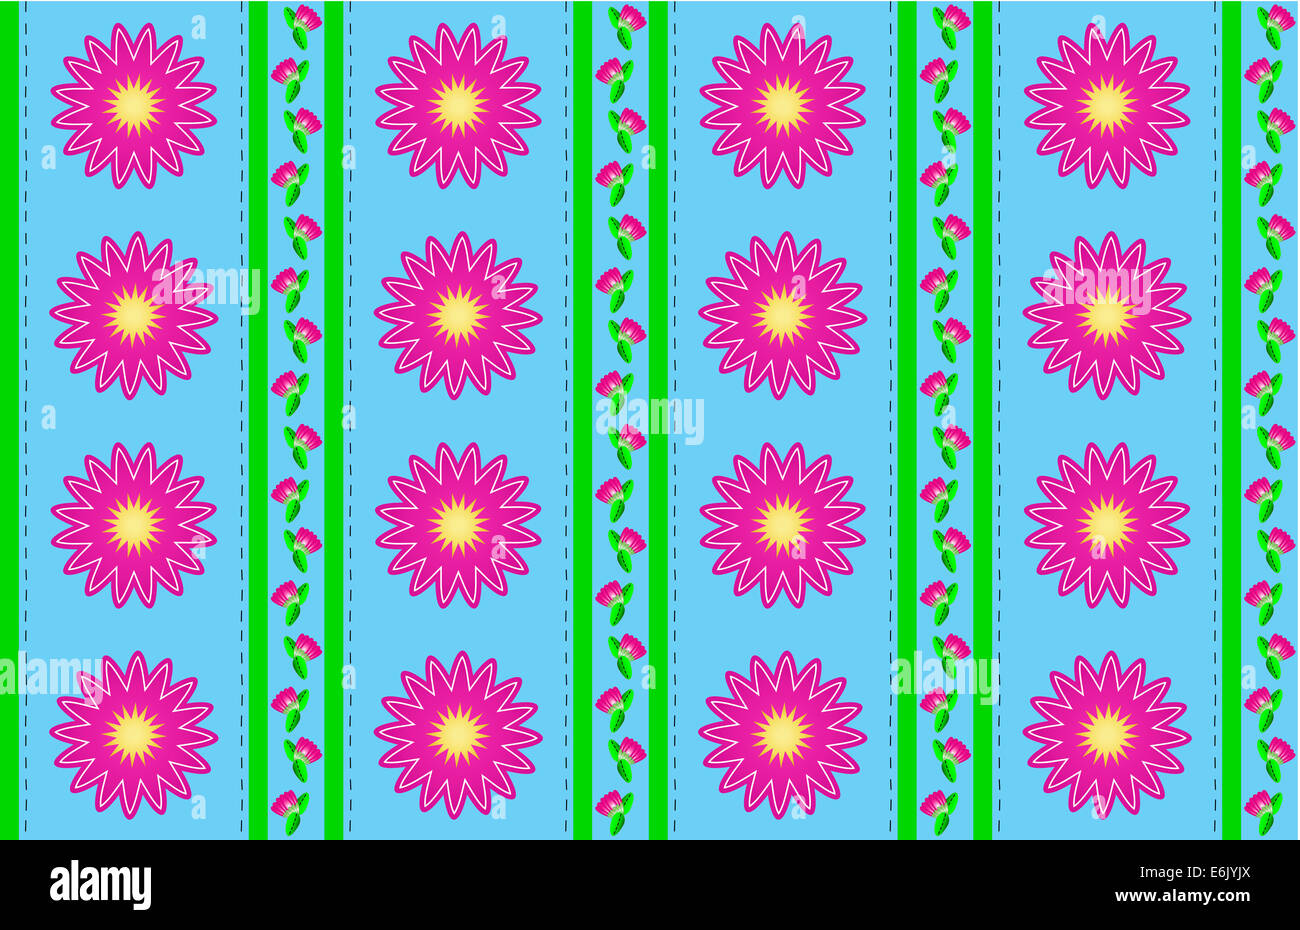 Jpg. Lo sfondo blu con sfondo rosa mamme o zinnias accentuati da strisce verdi e punti di trapuntatura. Uno di una serie. Foto Stock